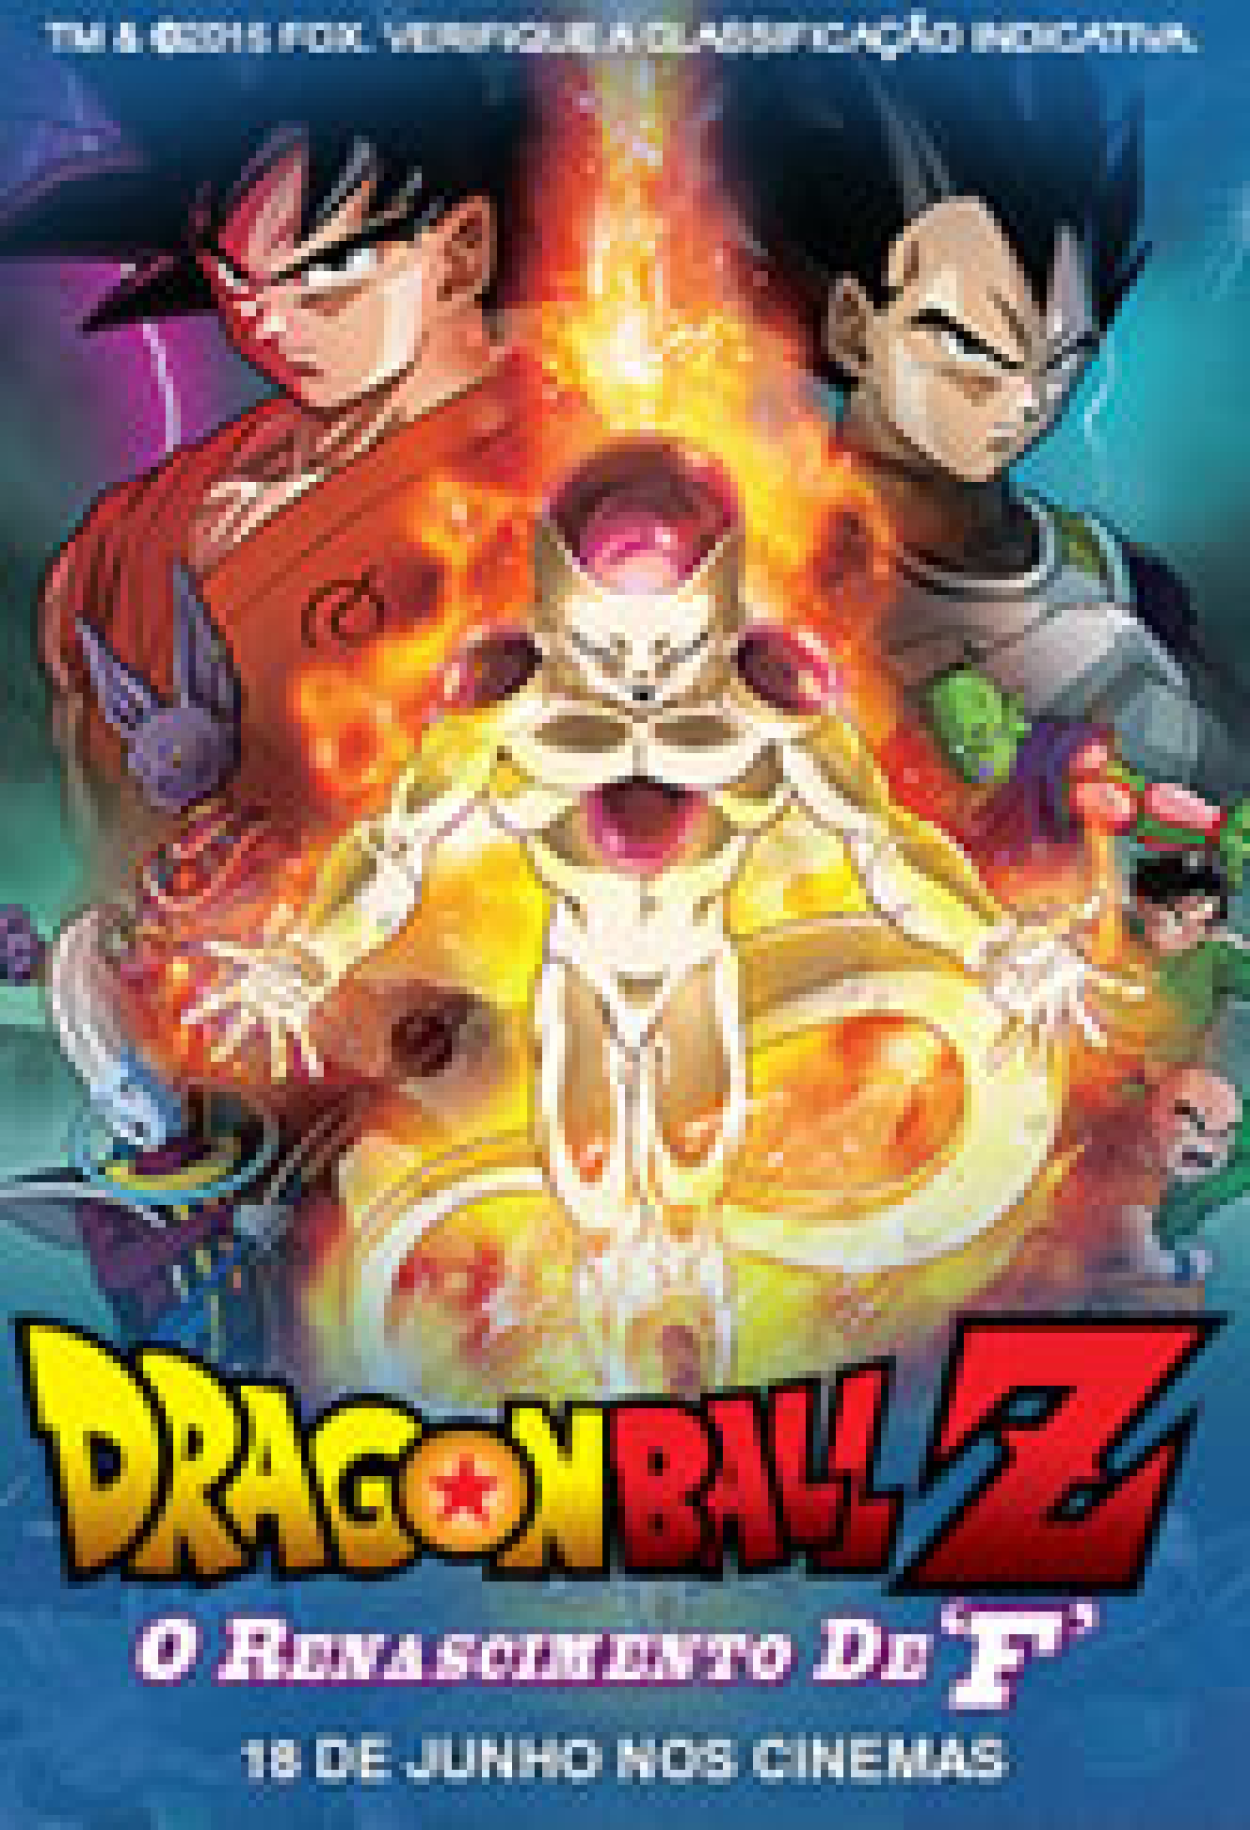 Dragon Ball Z: O Renascimento de F (Filme), Trailer, Sinopse e